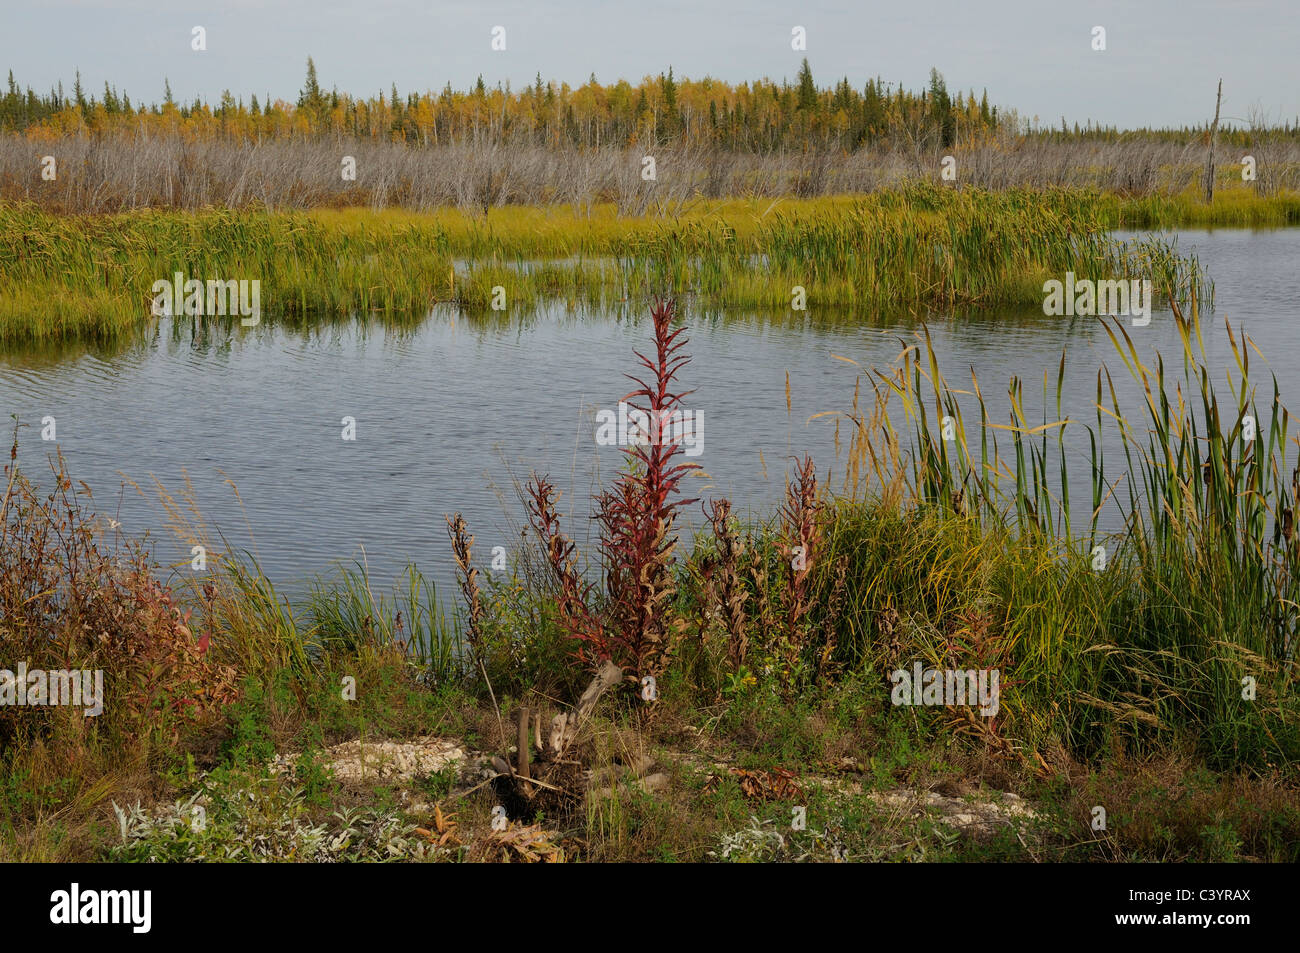 Marais, lac, Reed-mace, forêt, Automne, couleurs de l'automne, près de Fort Smith, dans territiories, Canada Banque D'Images